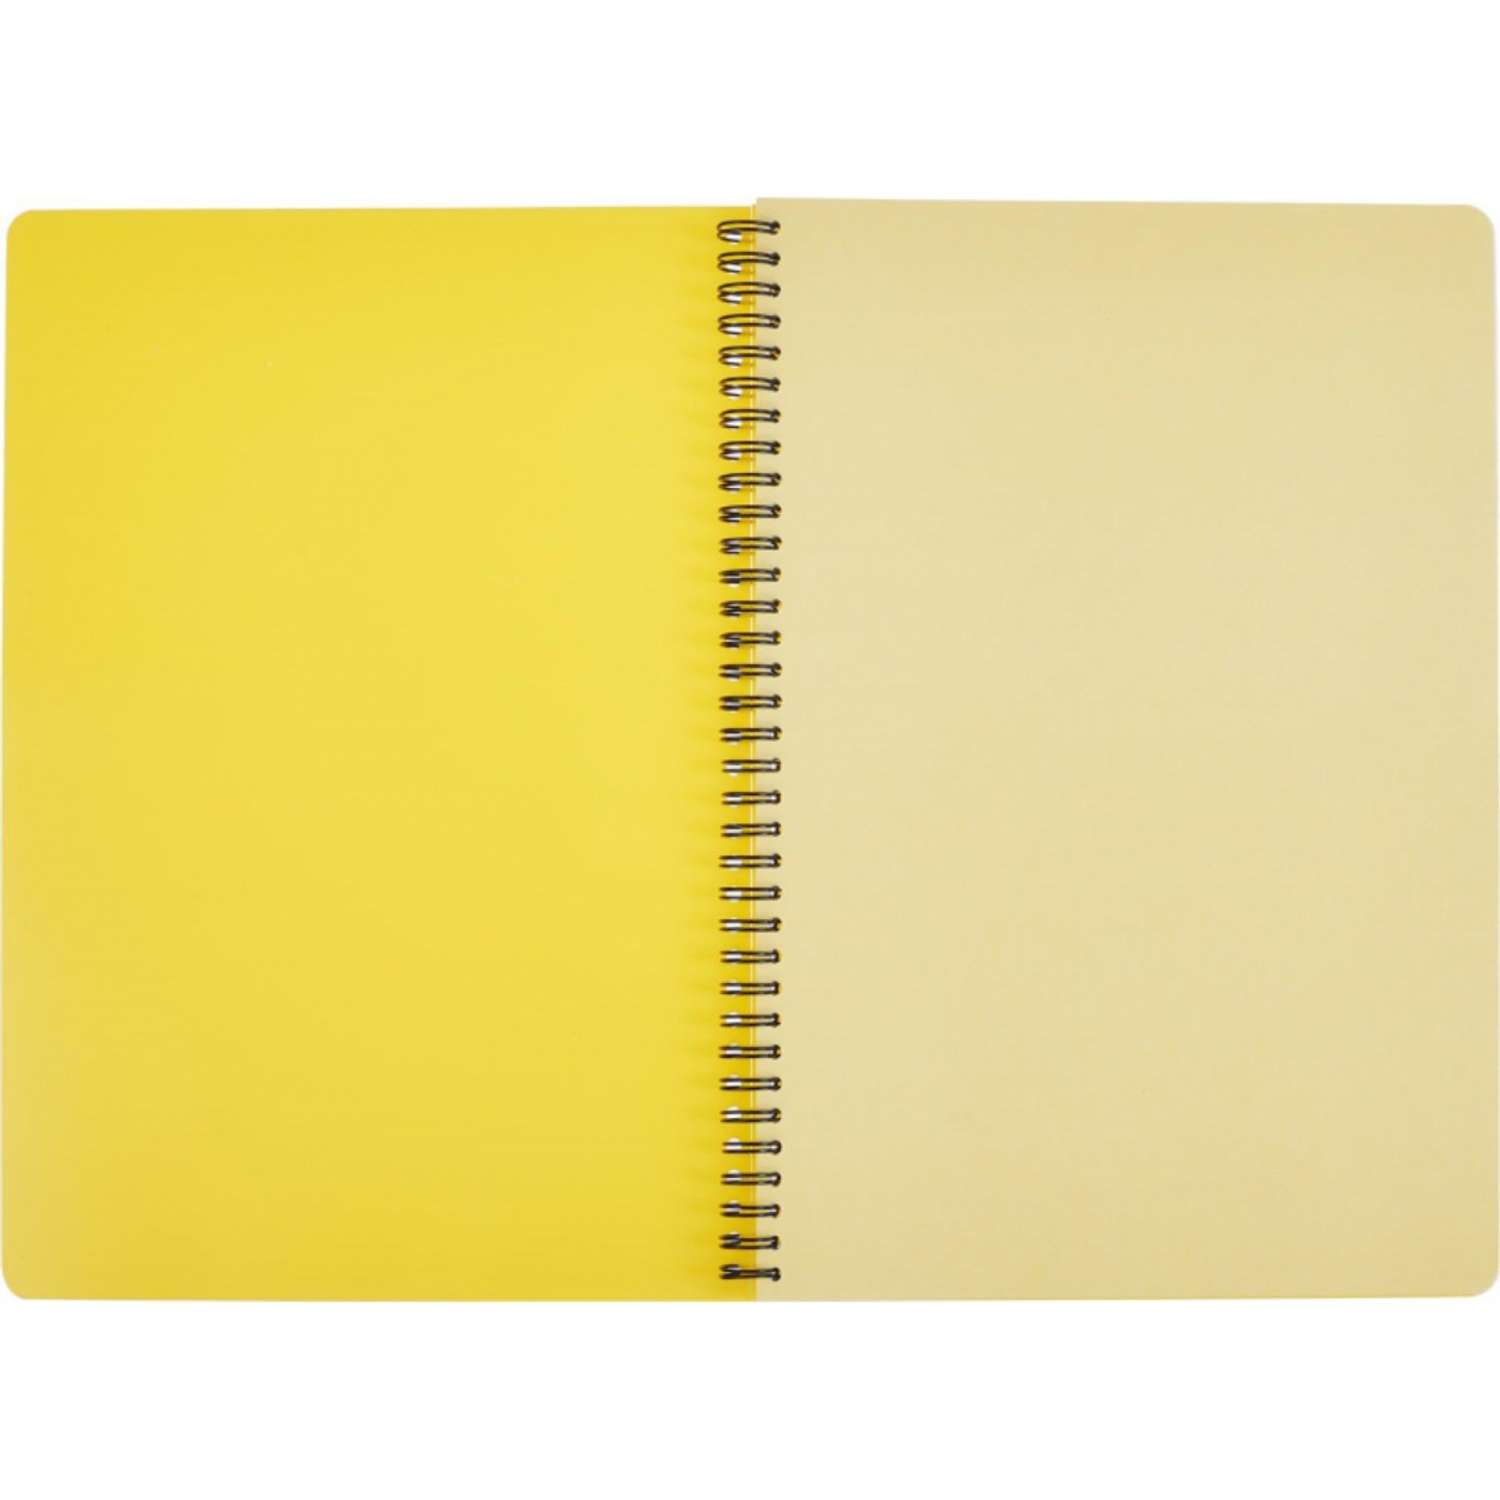 Бизнес-тетрадь Attache Bright colours А4 96 листов клетка спираль пластиковая обложка тонированный блок желтый - фото 3